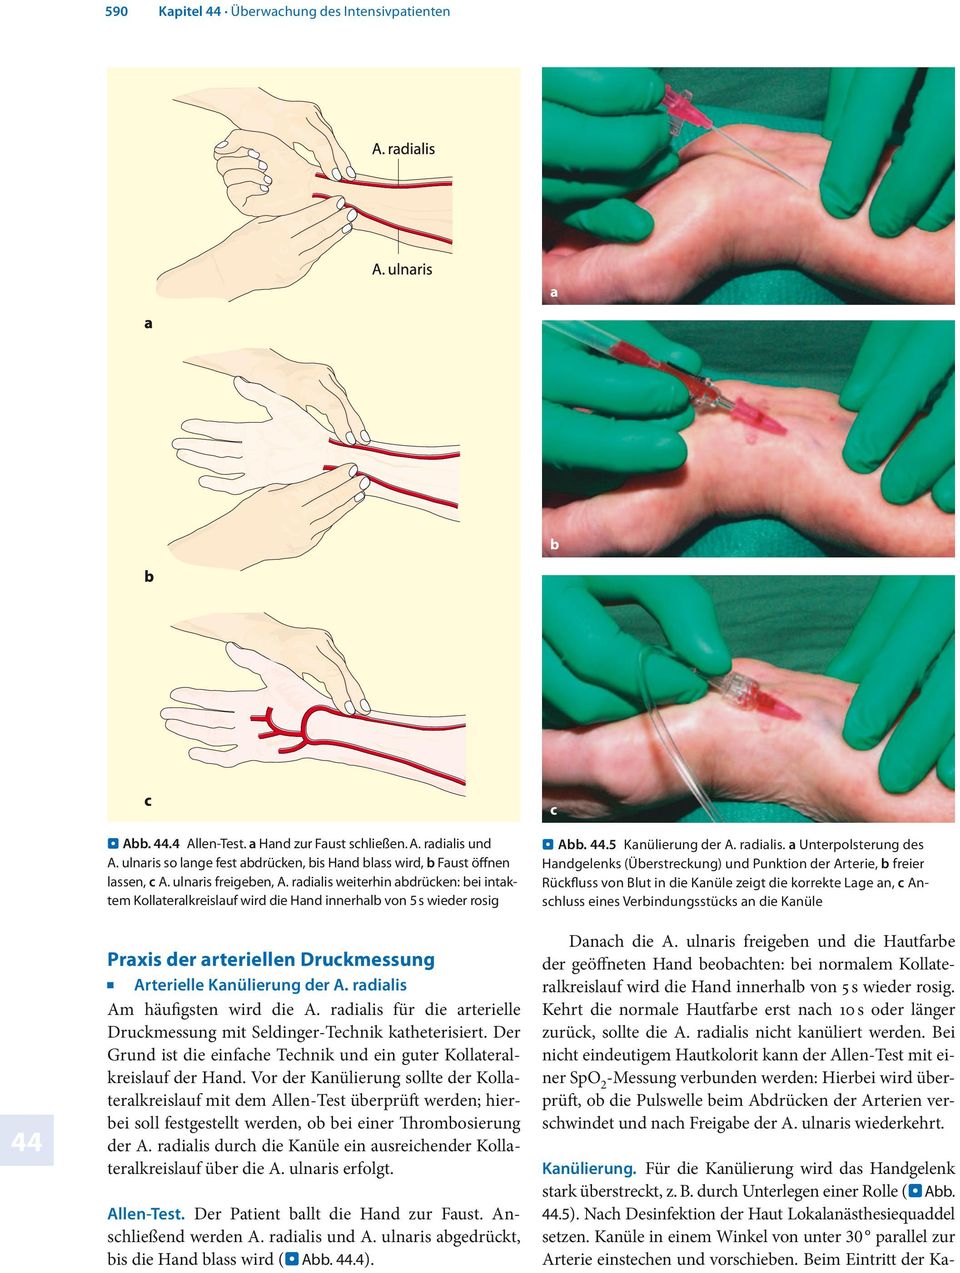 radialis Am häufigsten wird die A. radialis für die arterielle Druckmessung mit Seldinger-Technik katheterisiert. Der Grund ist die einfache Technik und ein guter Kollateralkreislauf der Hand.